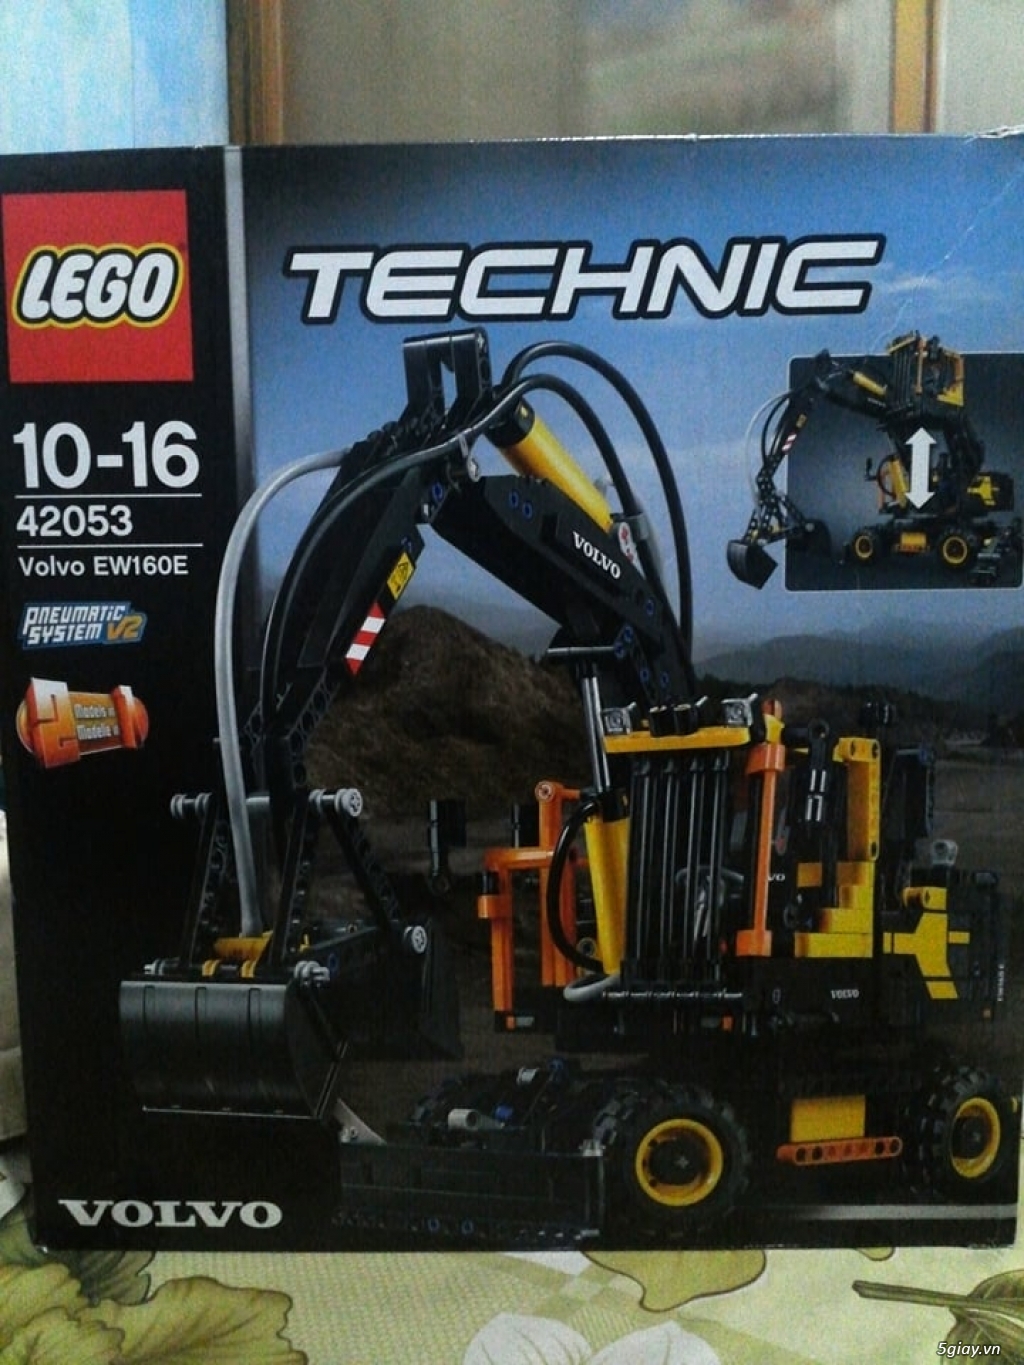 Bán Lego technic chính hãng Đan Mạch, chất lượng và giá hot nhất ! - 31